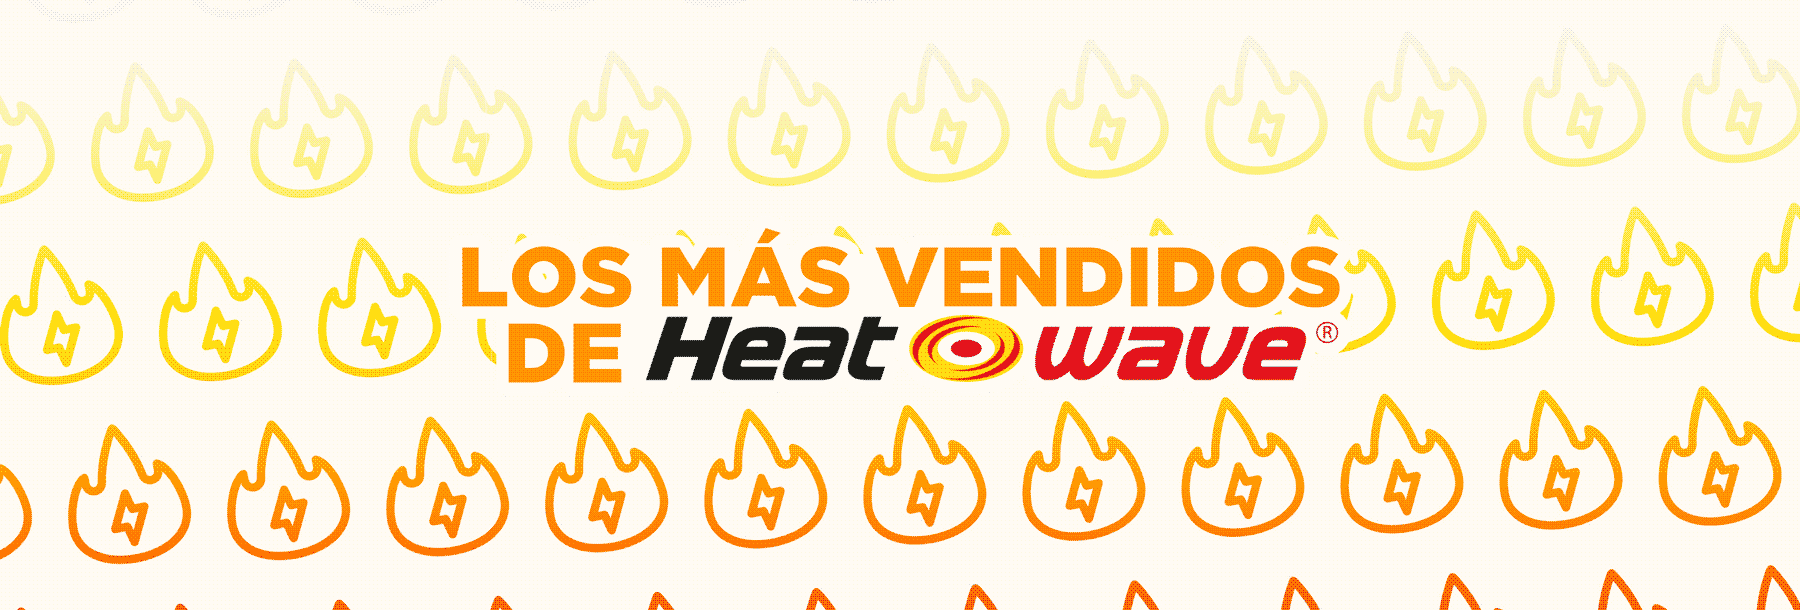 Portada-Los-más-vendido-de-Heatwave